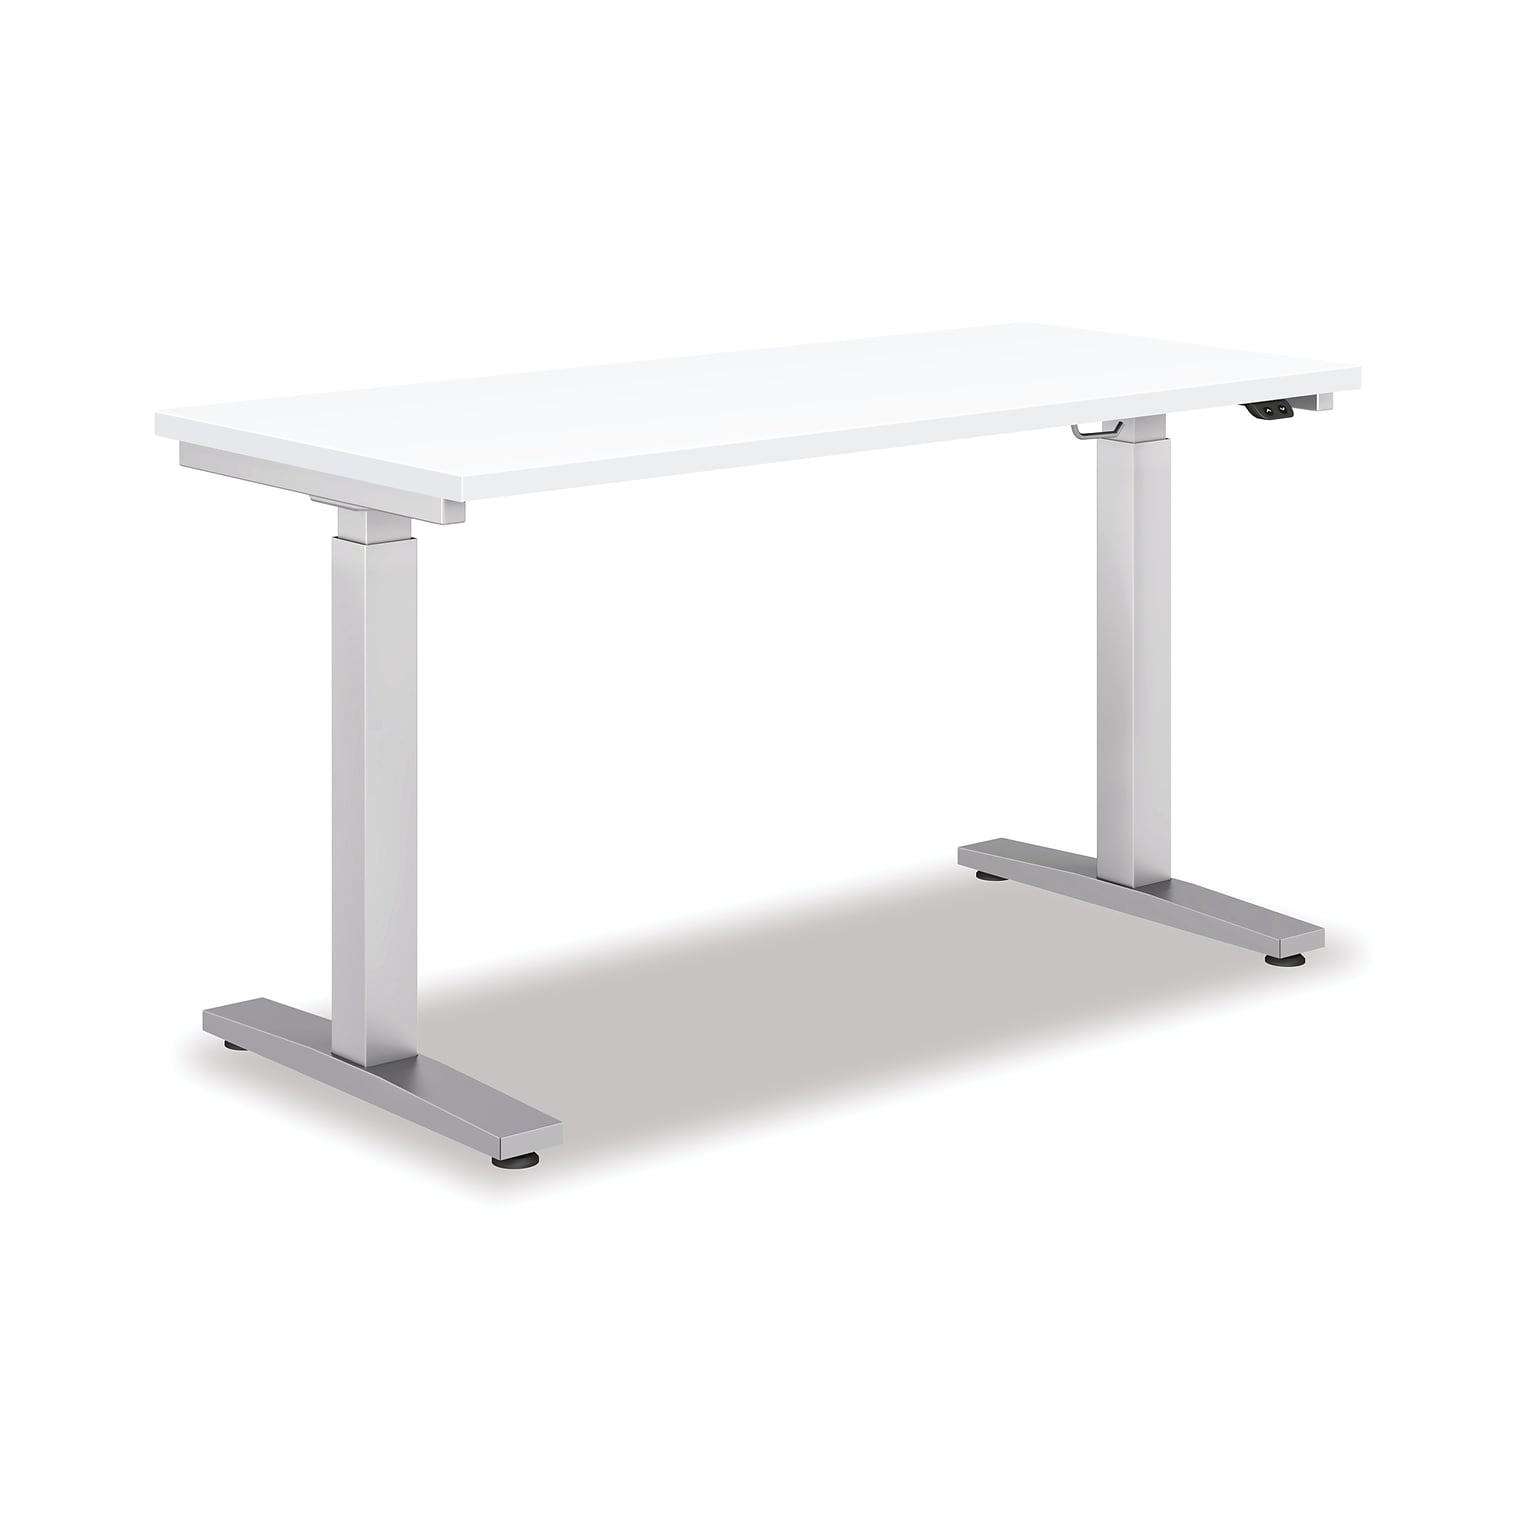 HON Coze 48W Laminate Height Adjustable Table, White (HABETADW2448I)